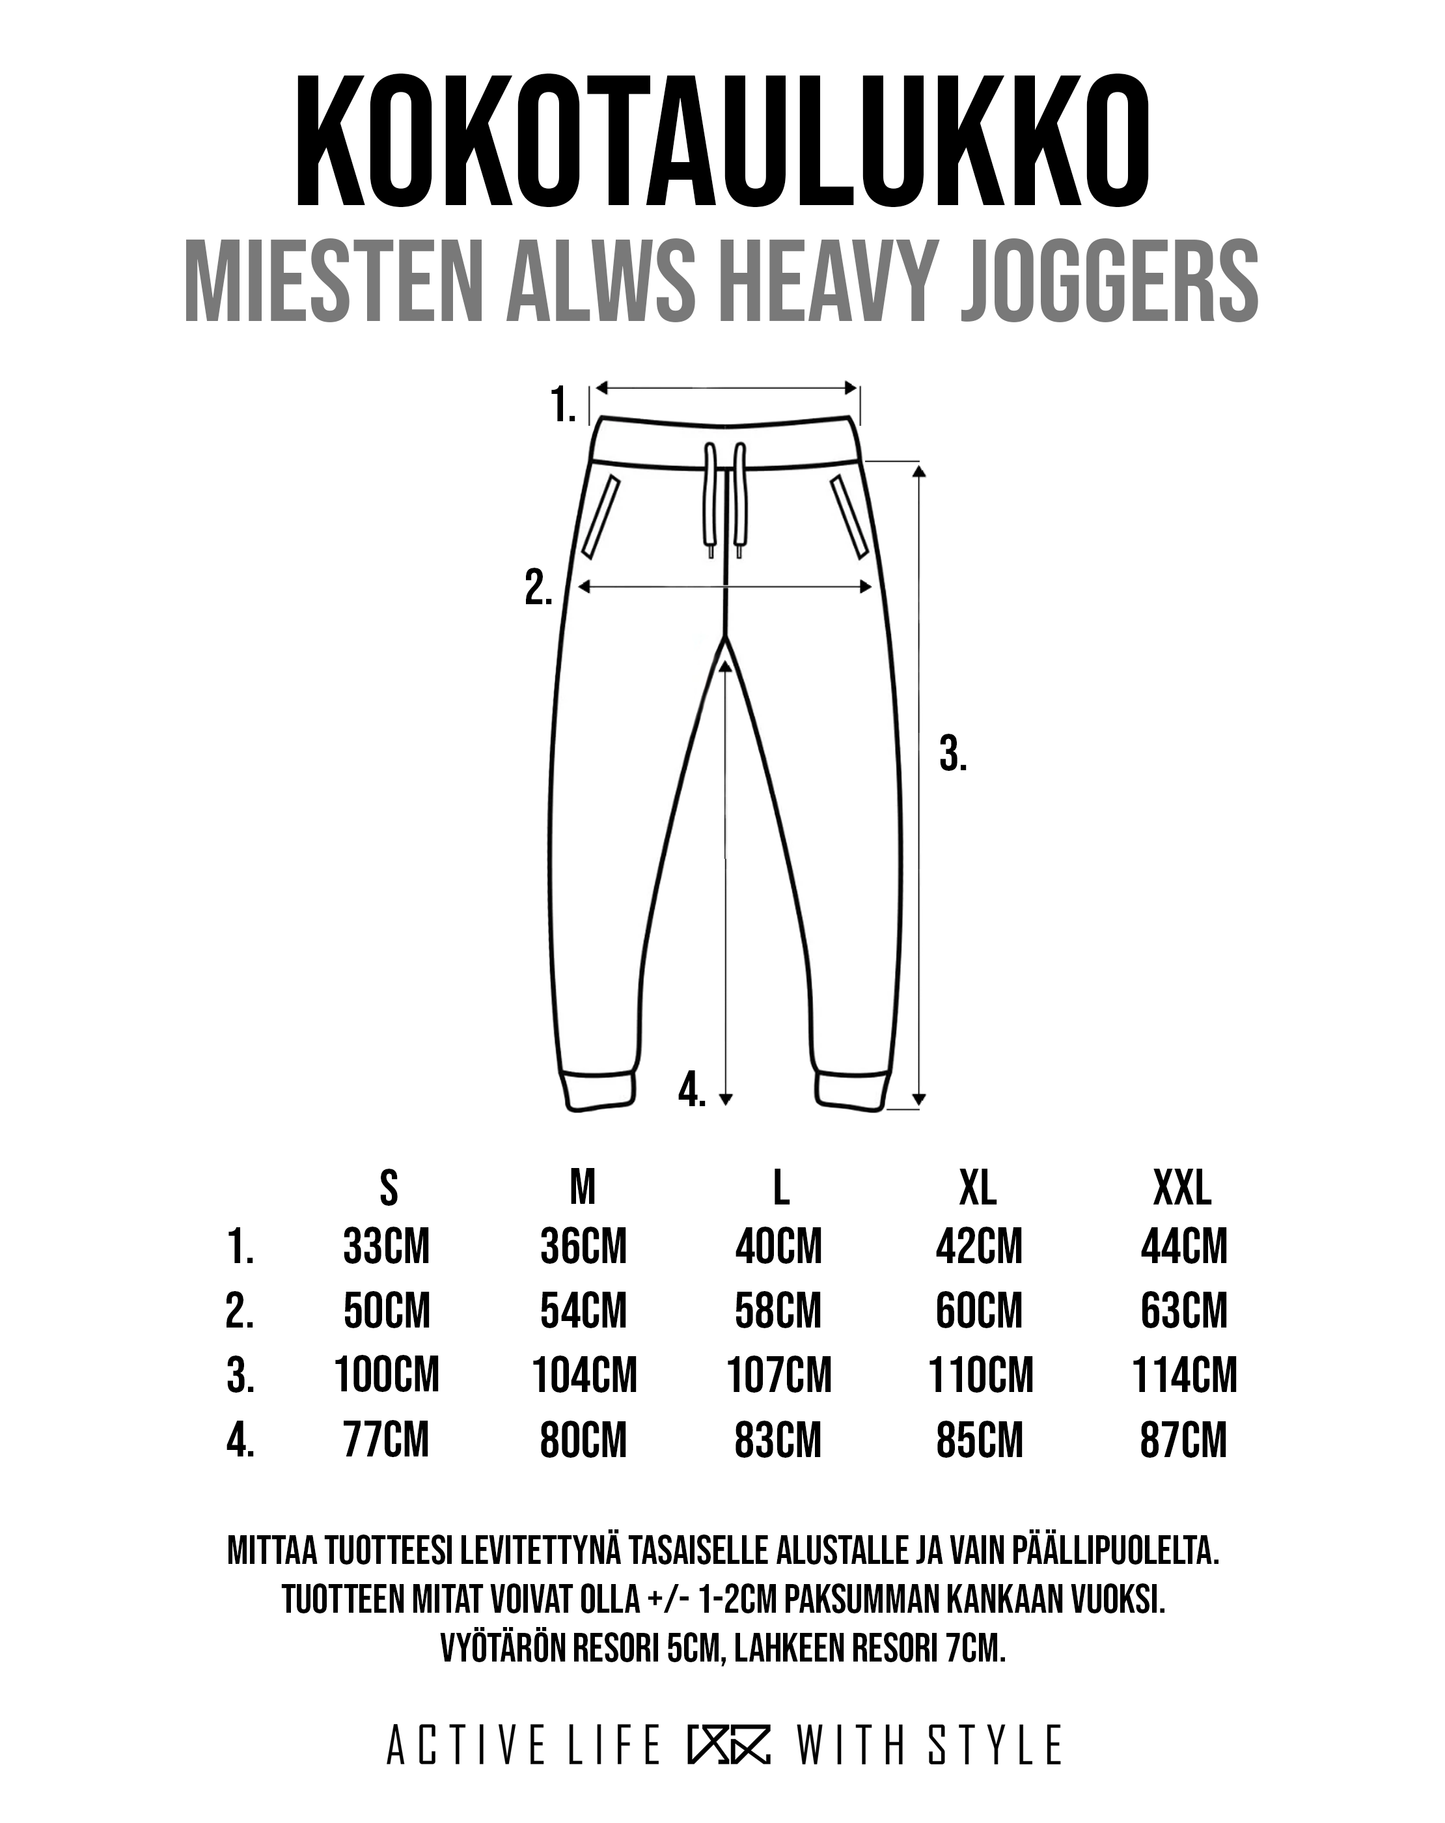 ALWS Heavy Joggers (miehet) - the Original 187